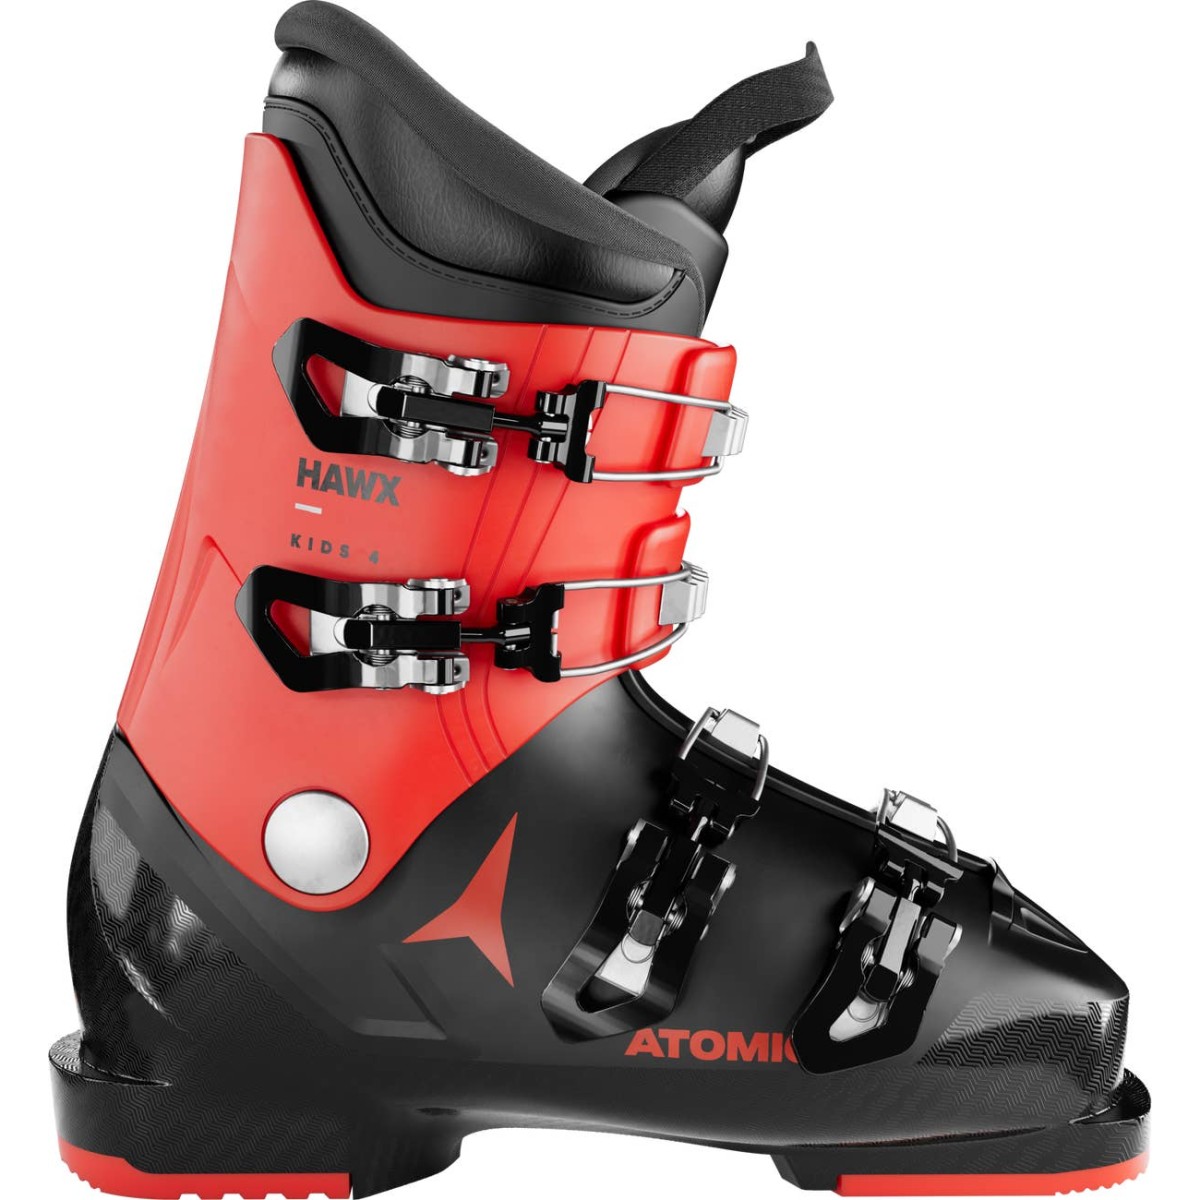 ATOMIC HAWX KIDS 4 alpine ski boots - black/red